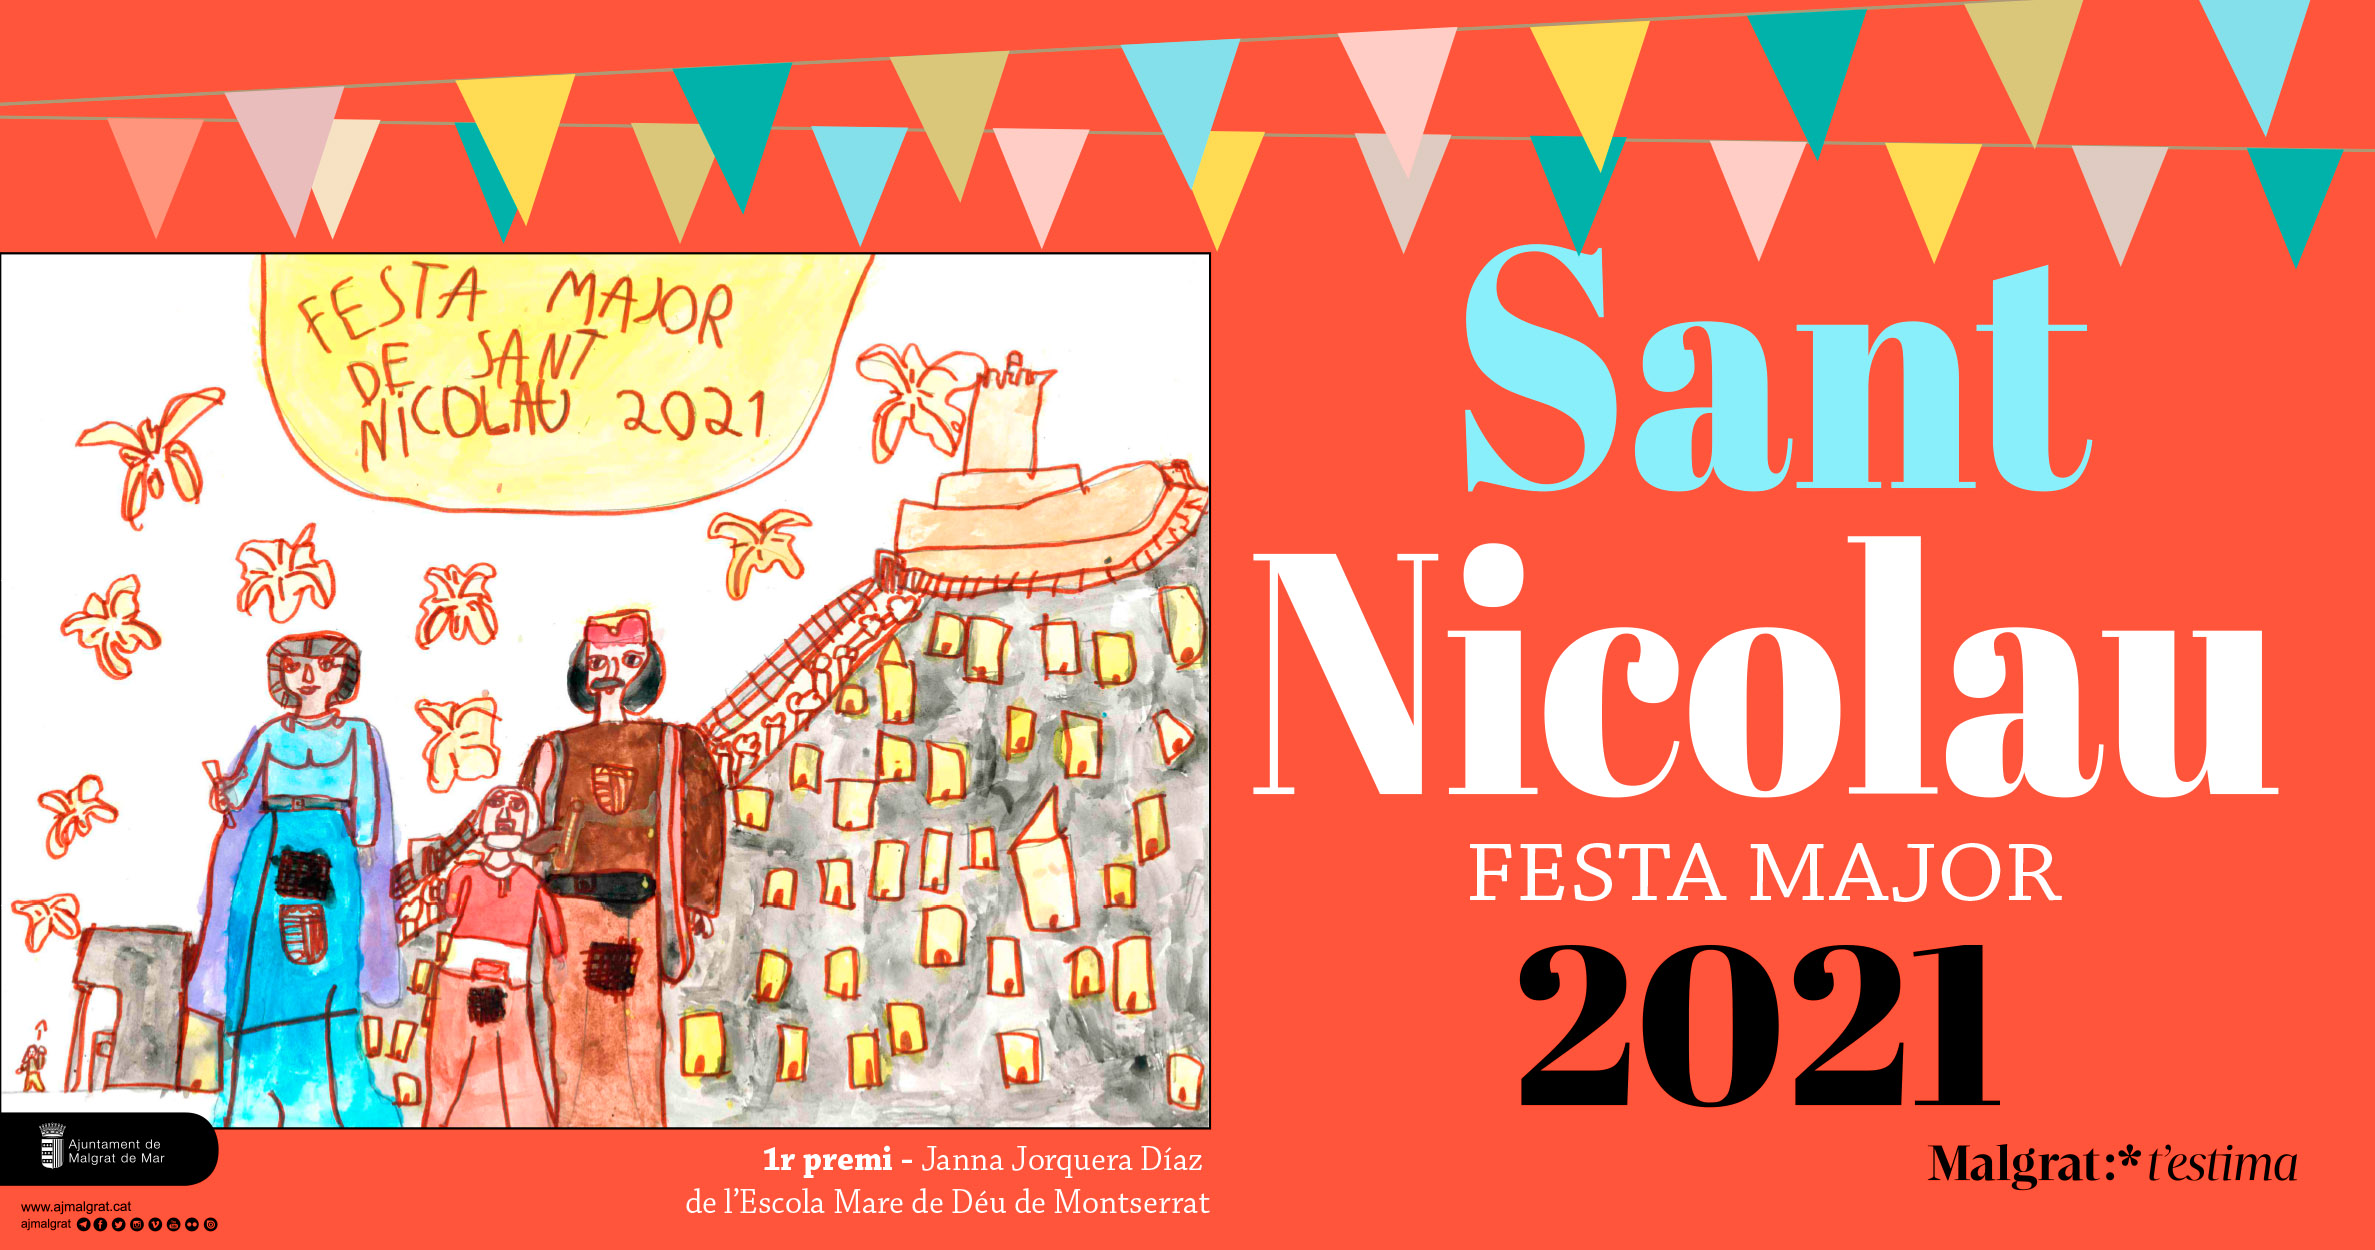 El cartell de Sant Nicolau 2021. Foto: AjMalgrat.